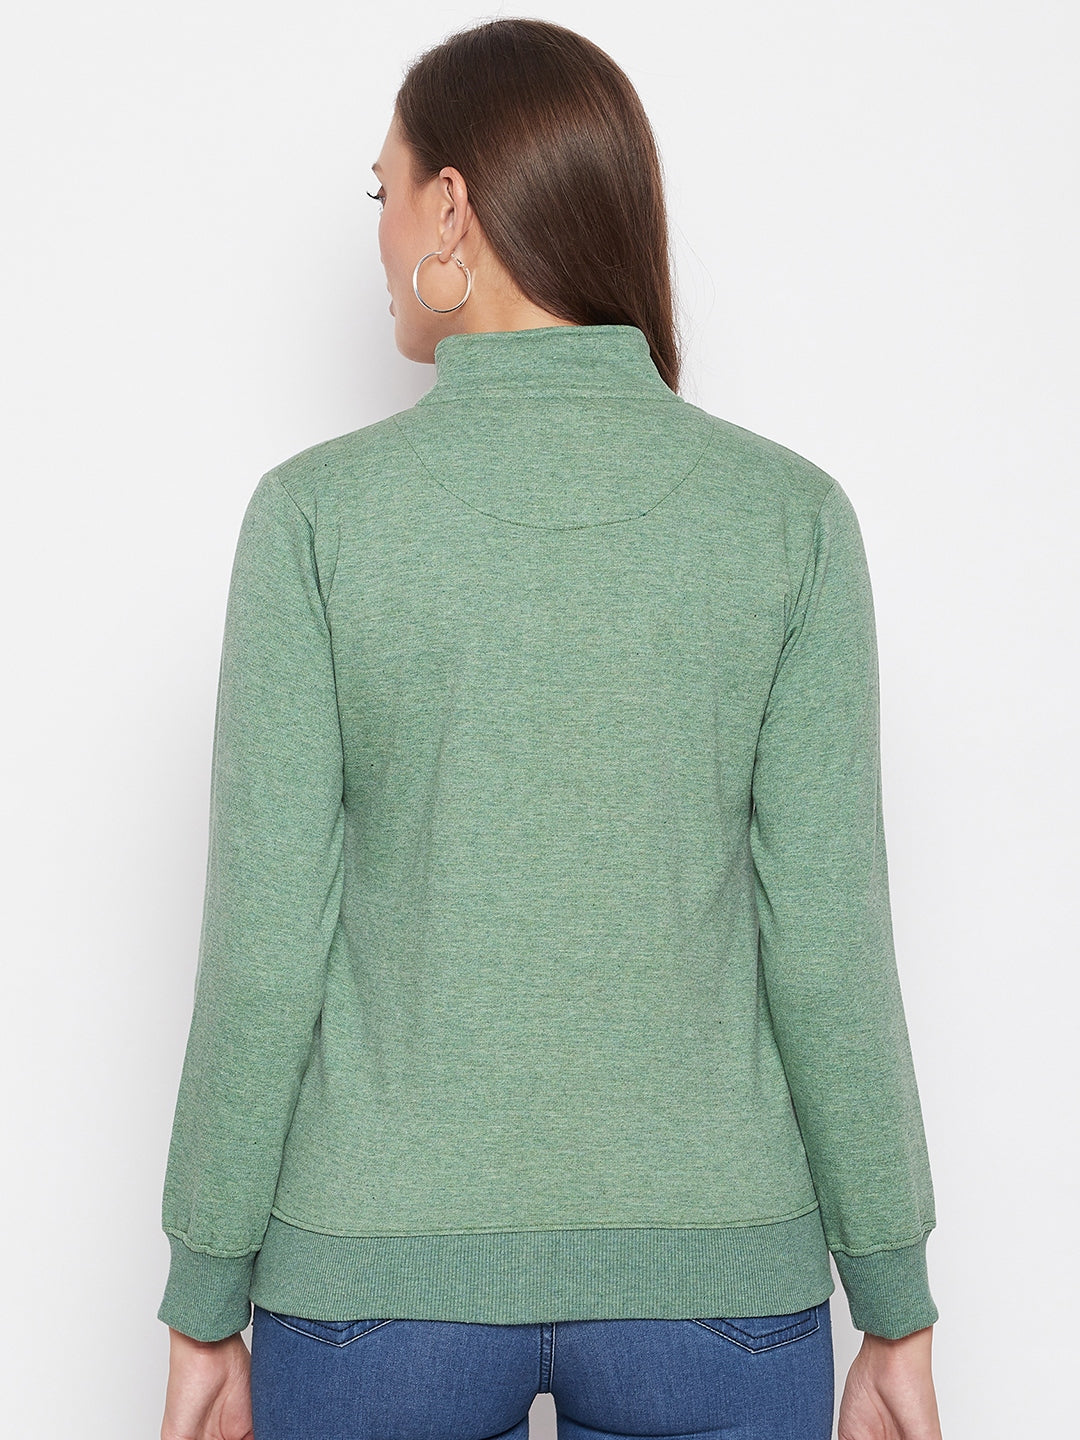 Livfree Women's Mock Collar Full Sleeves Milange Sweatshirt - Green Milange (Zipper)